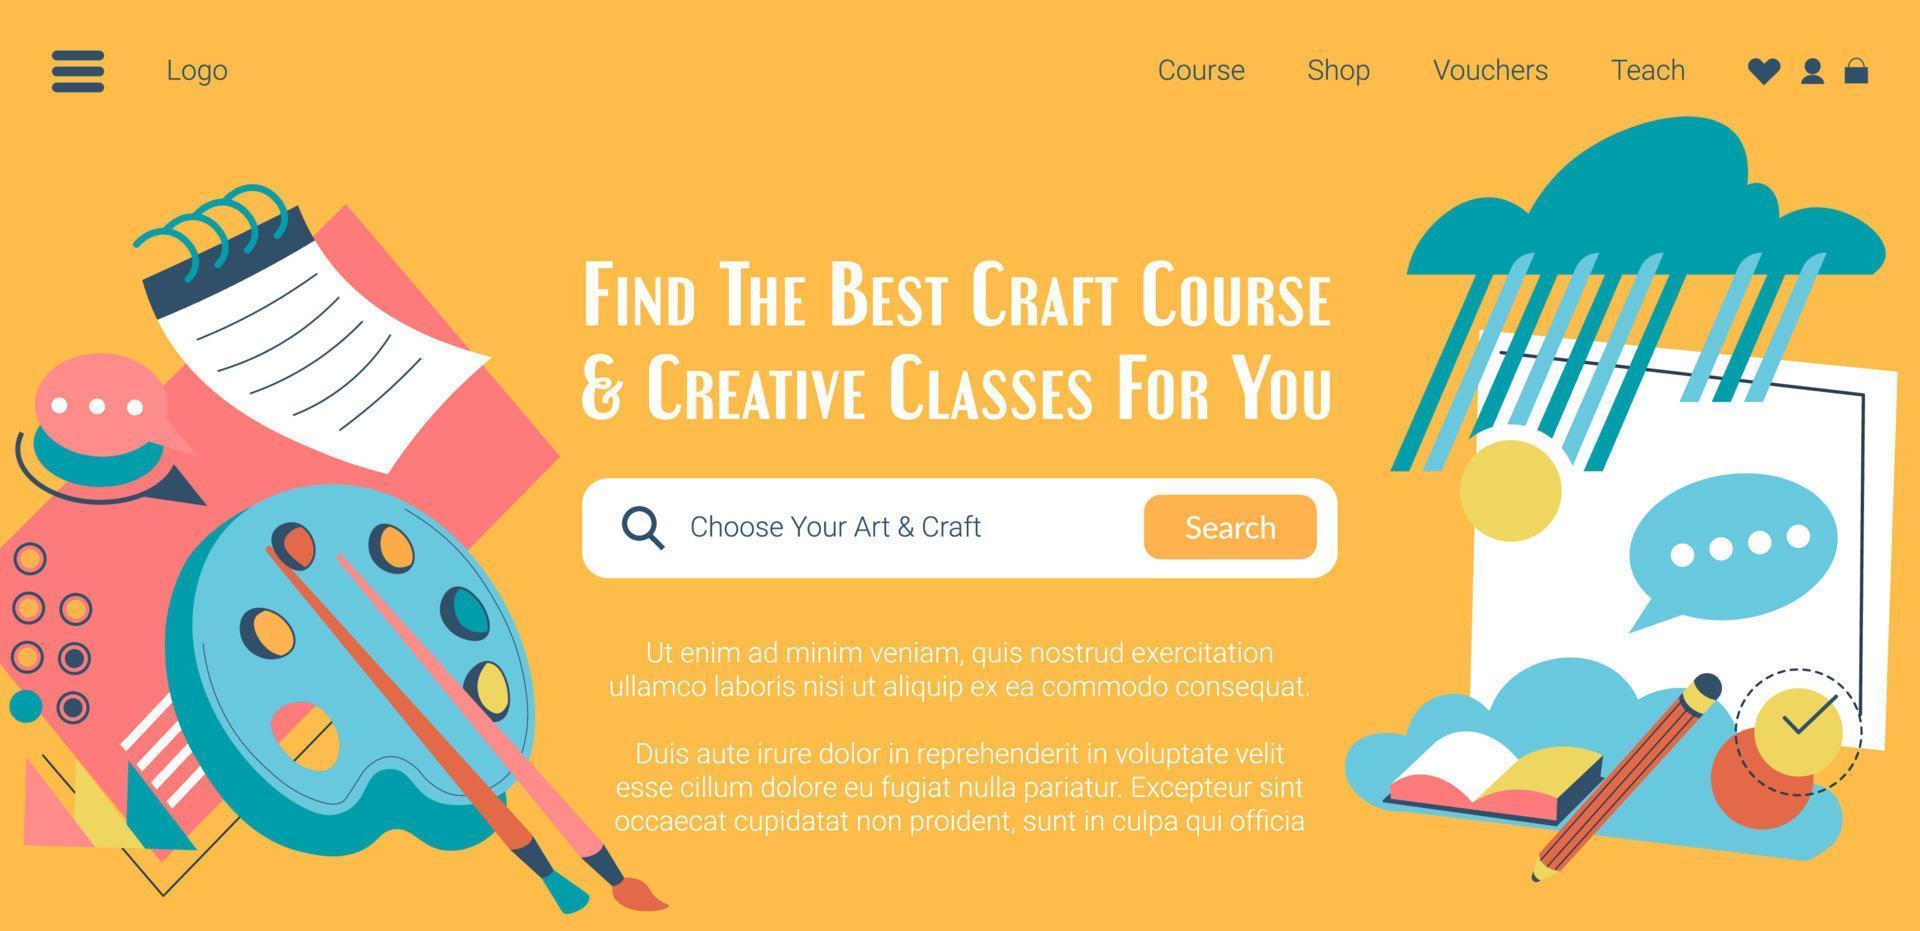 encontre o melhor curso de artesanato e aulas criativas na web vetor